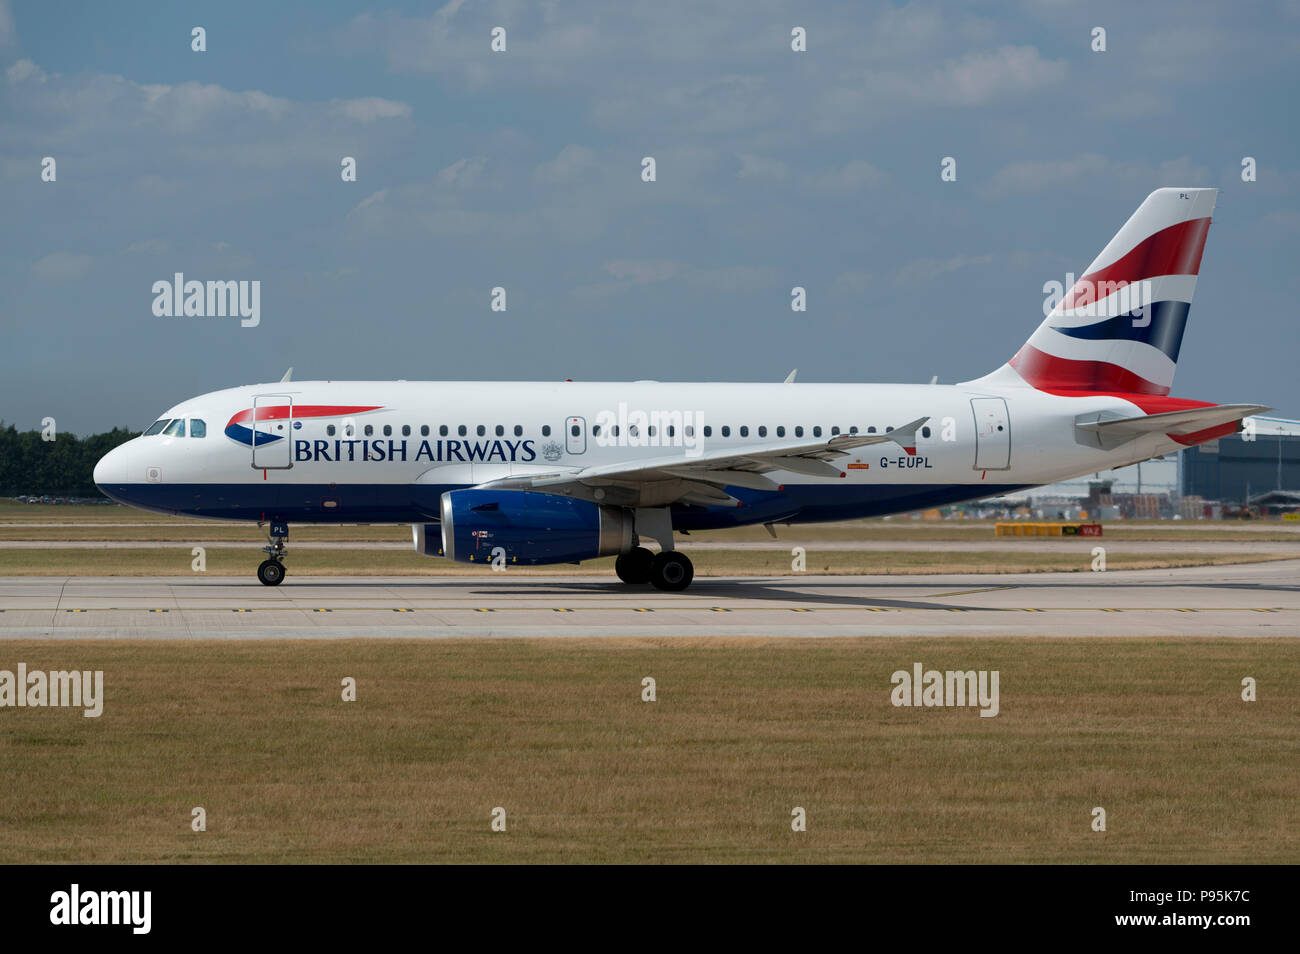 Un A319 de British Airways est situé sur la piste à l'aéroport de Manchester alors qu'elle s'apprête à décoller. Banque D'Images